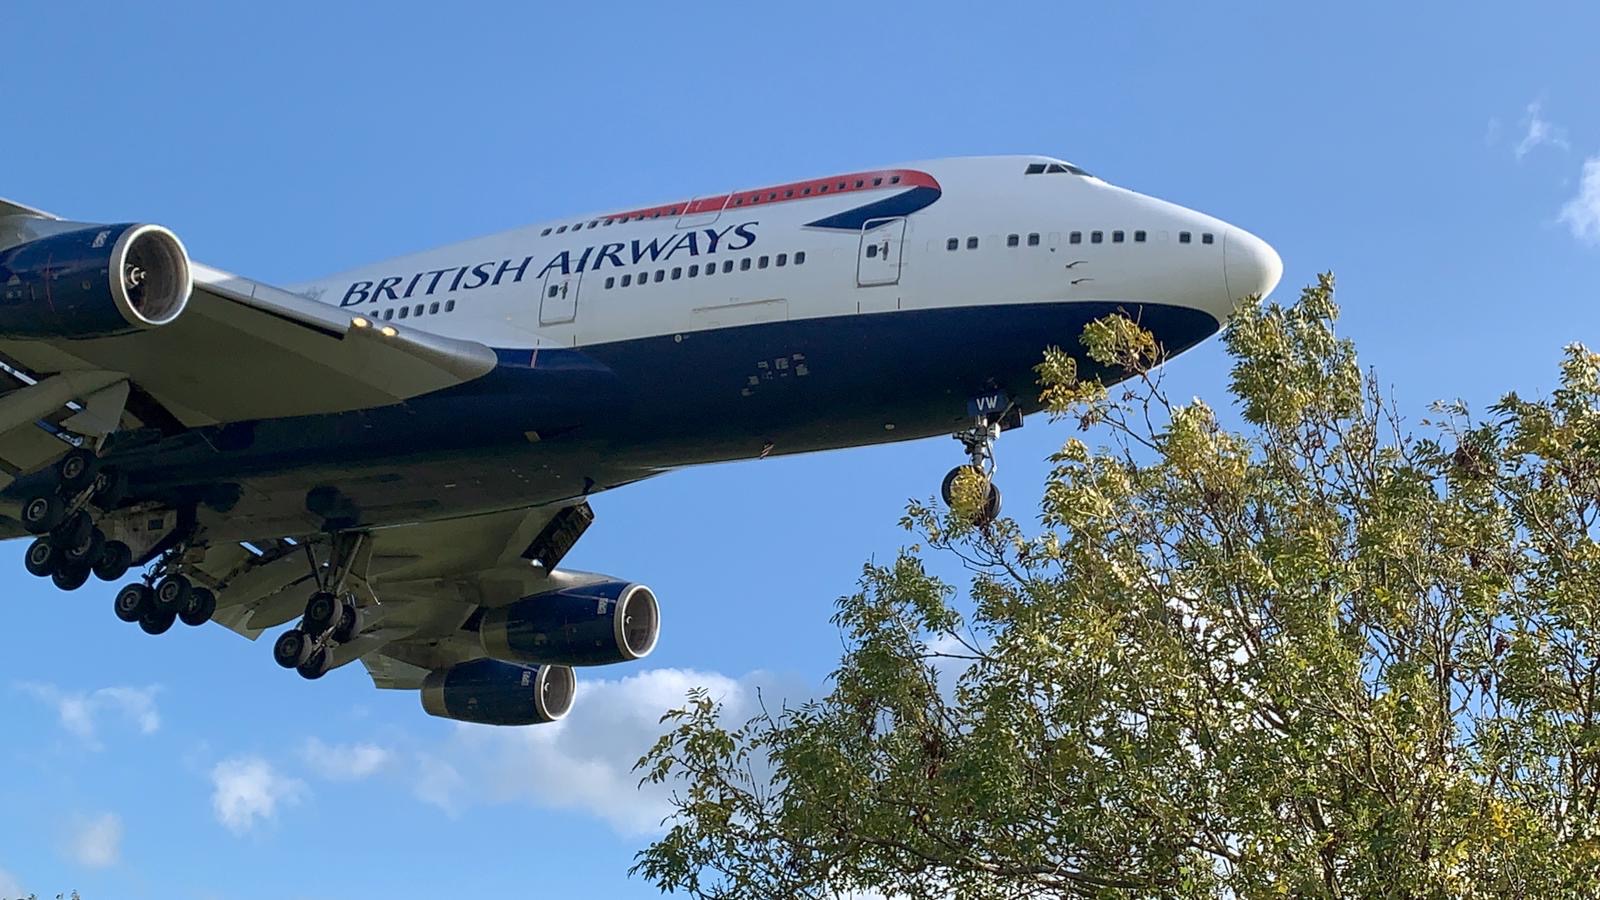 BA retires 747s